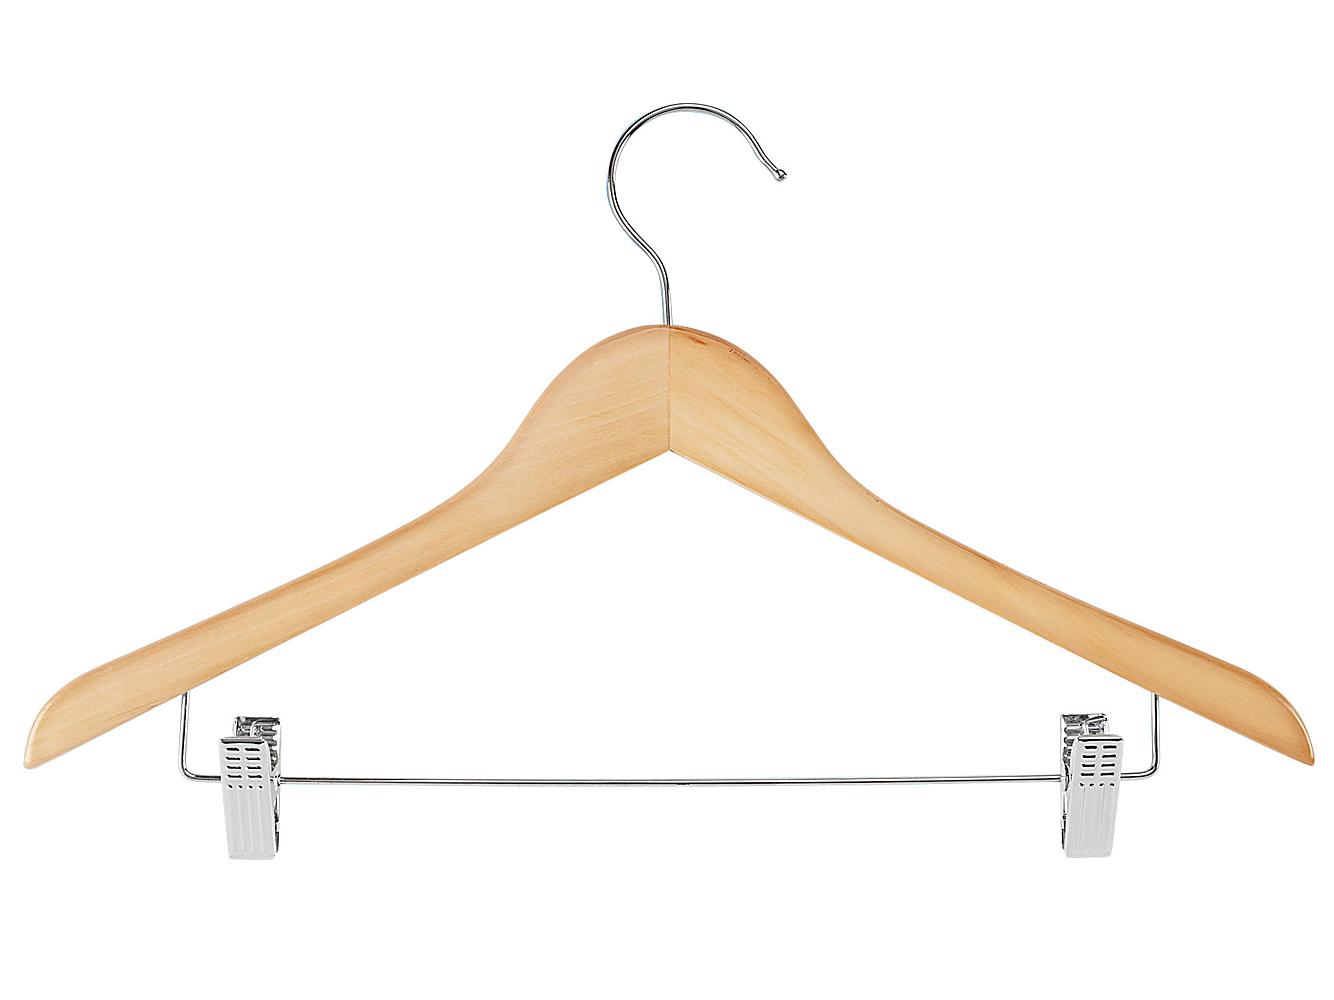 Hangers, Clothing Hangers in Stock - ULINE - Uline